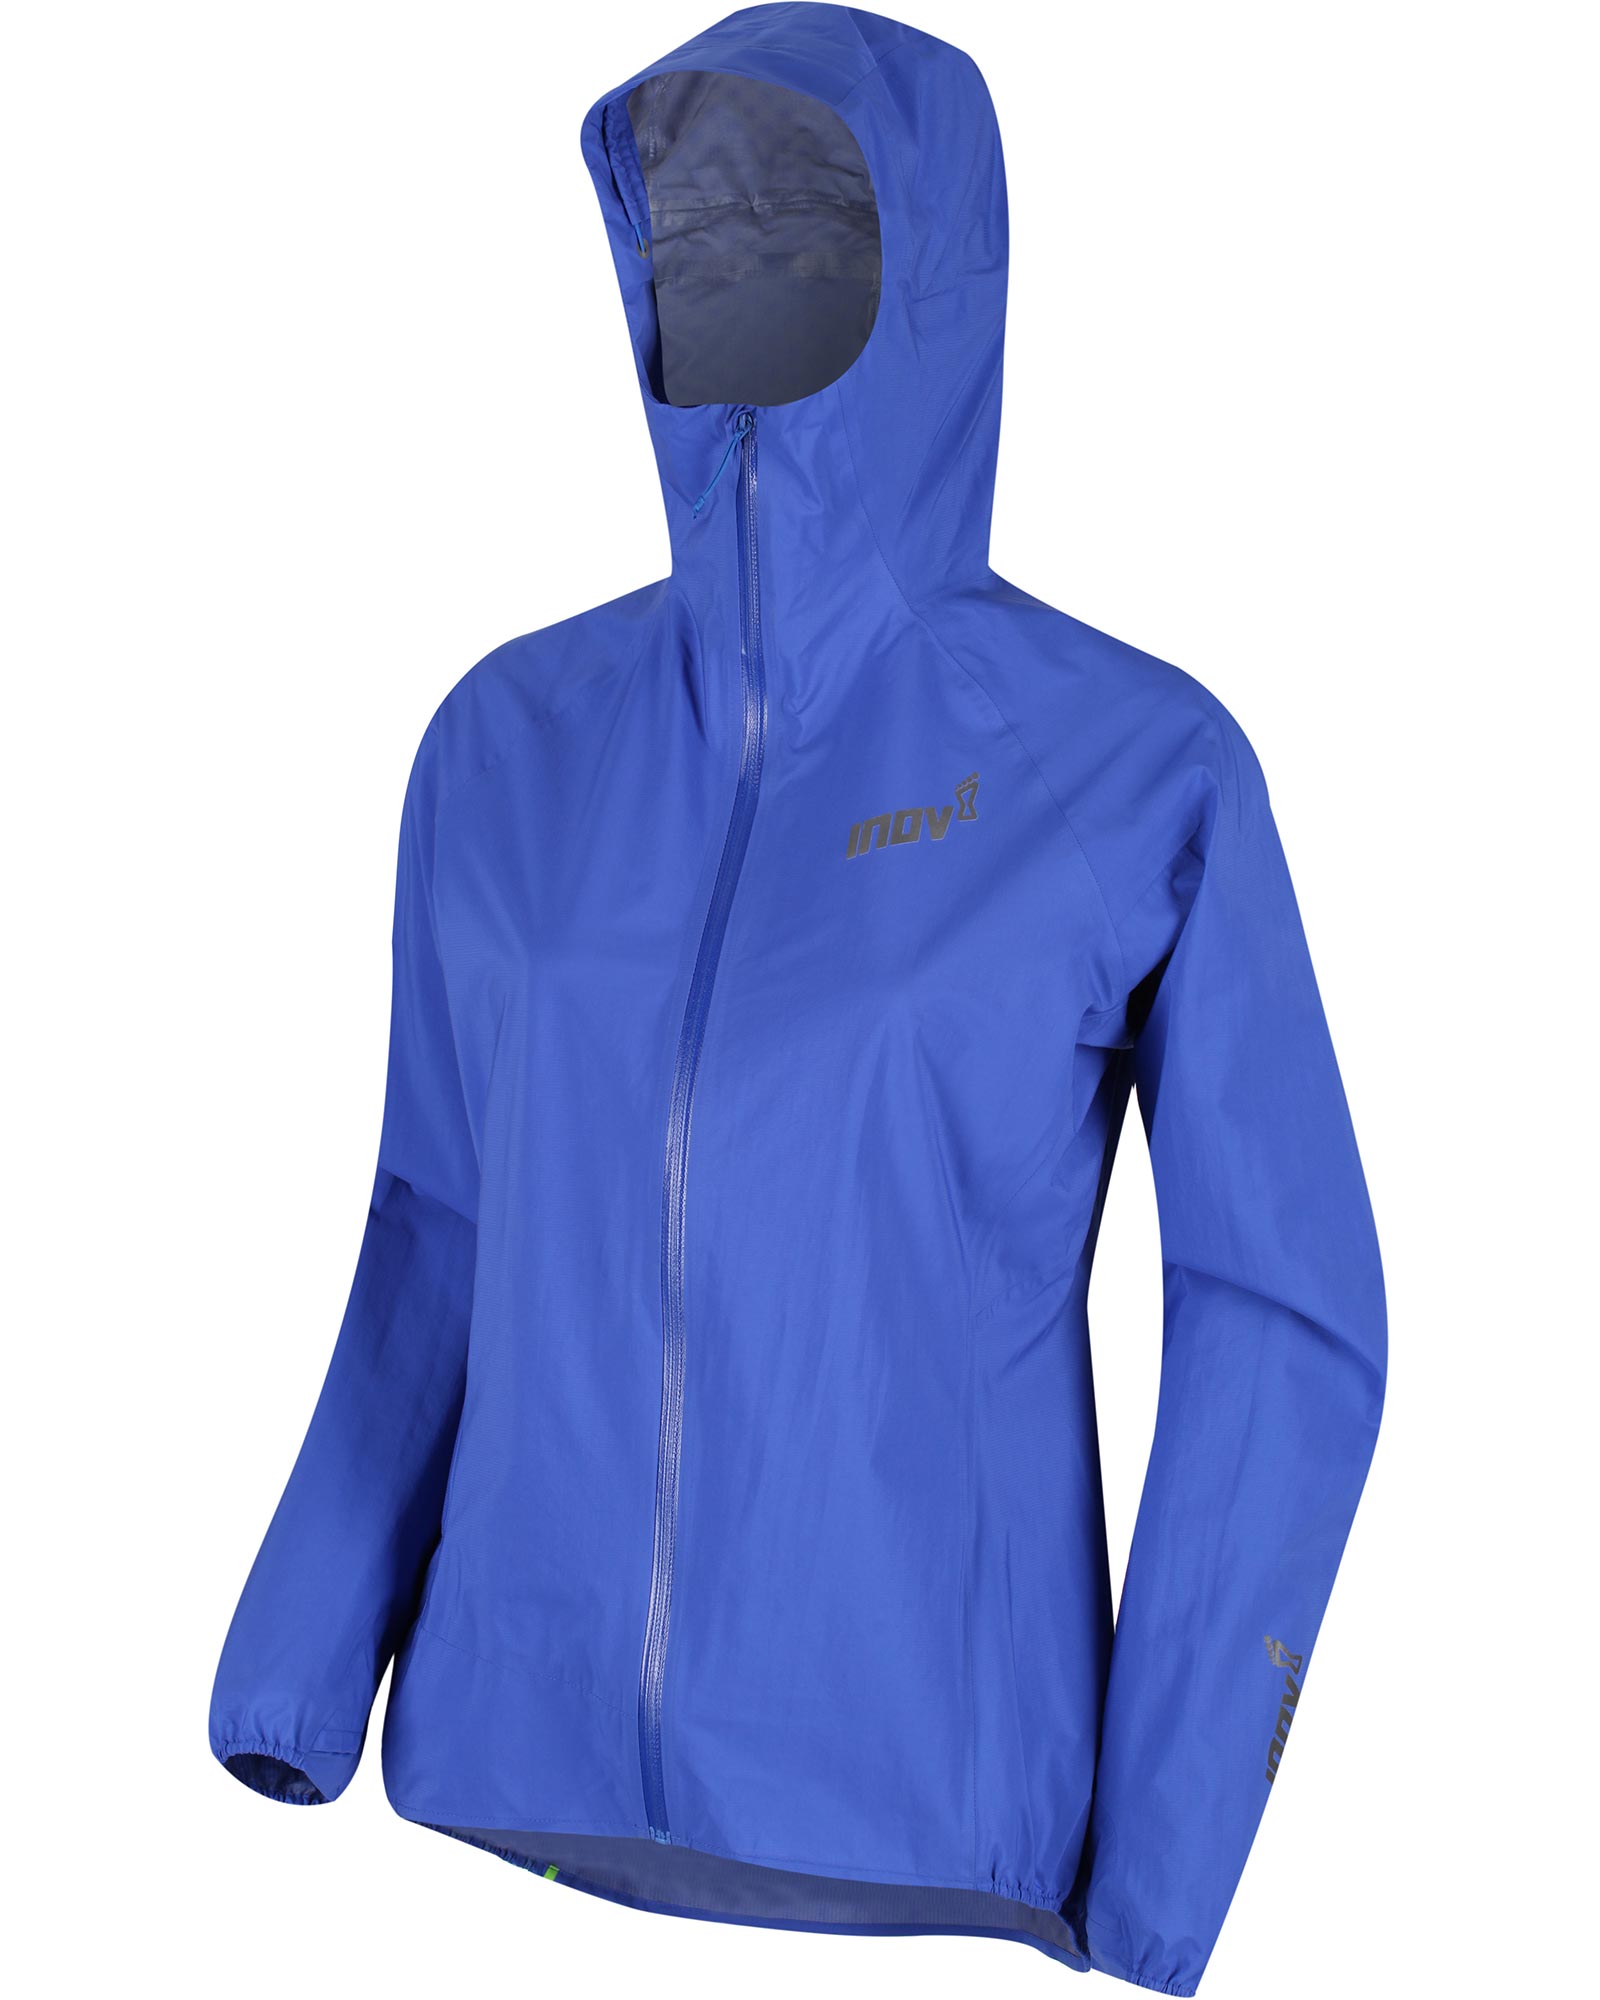 Inov 8 Full Zip Stormshell Women’s Jacket - Blue 14